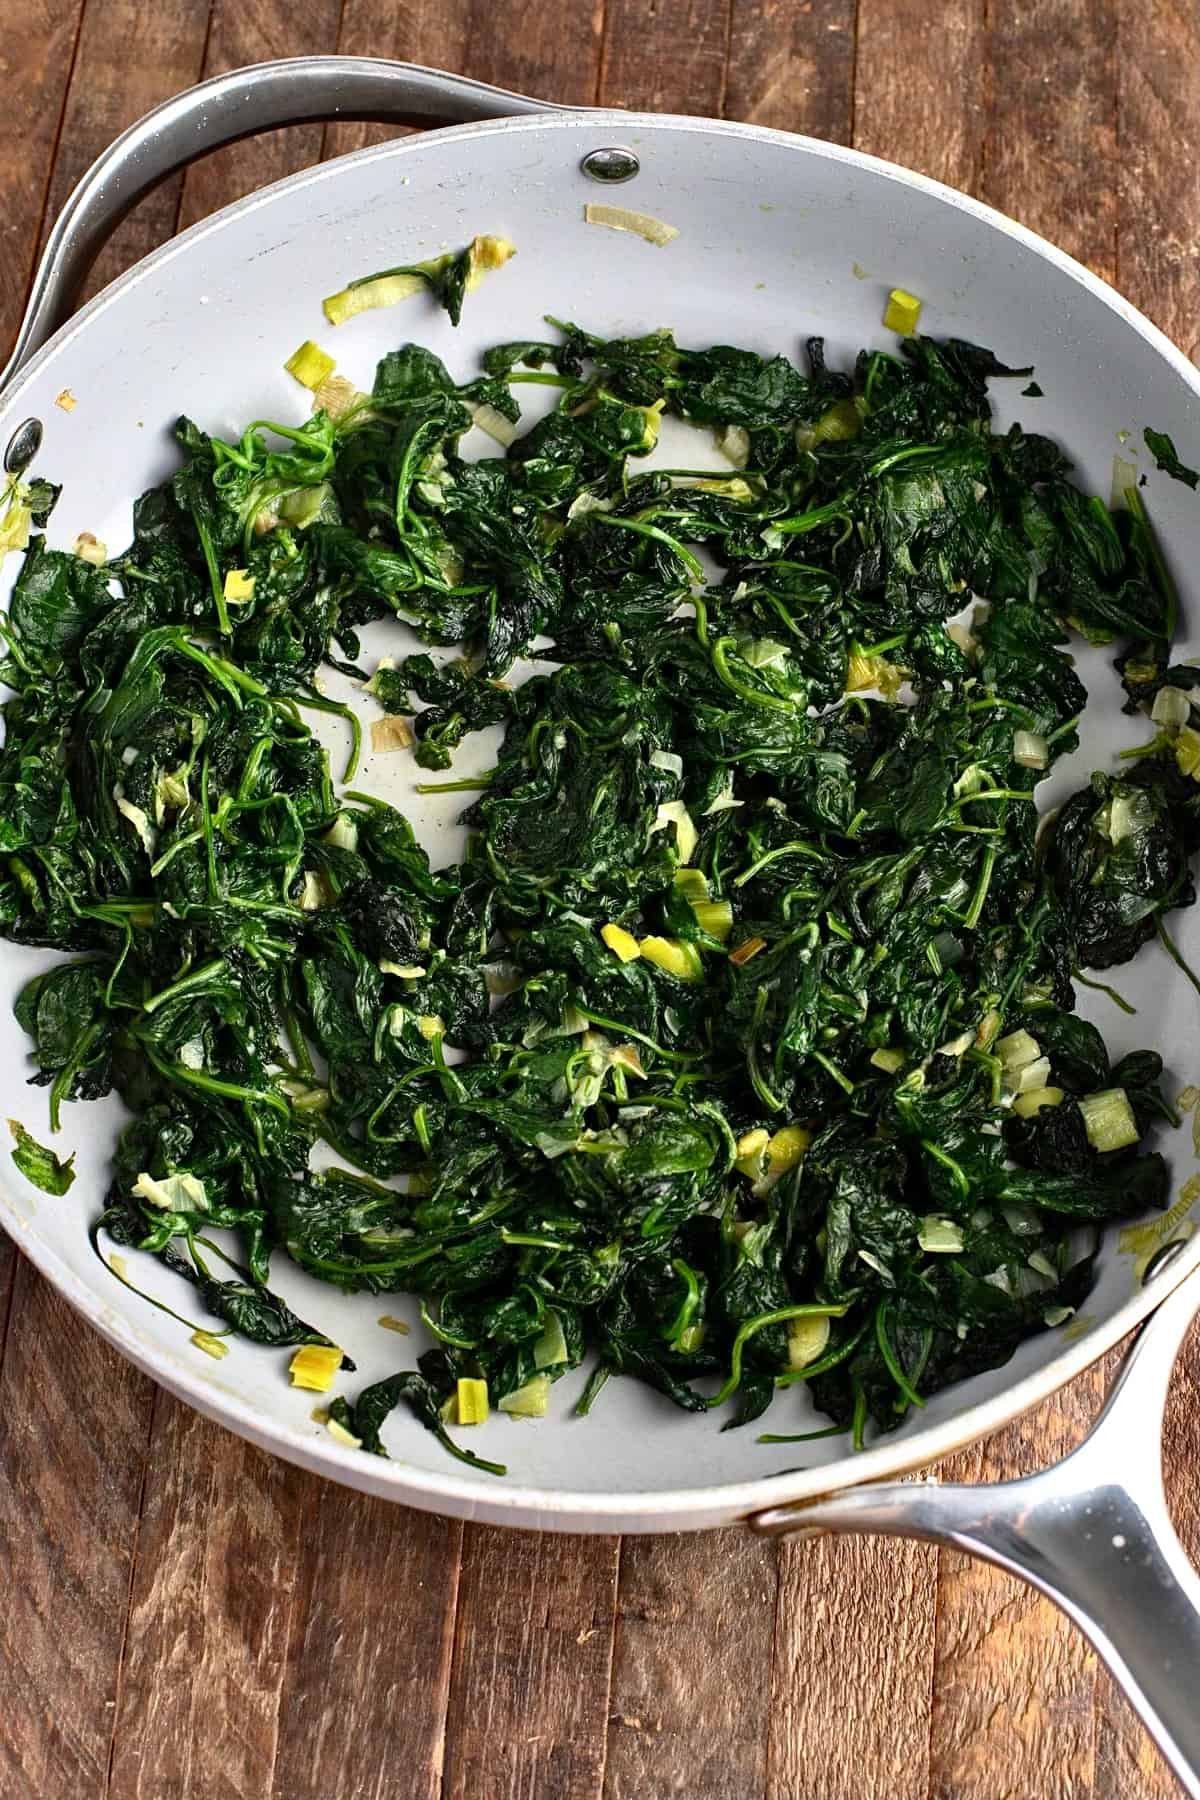 Prepare the spinach for Spanakopita